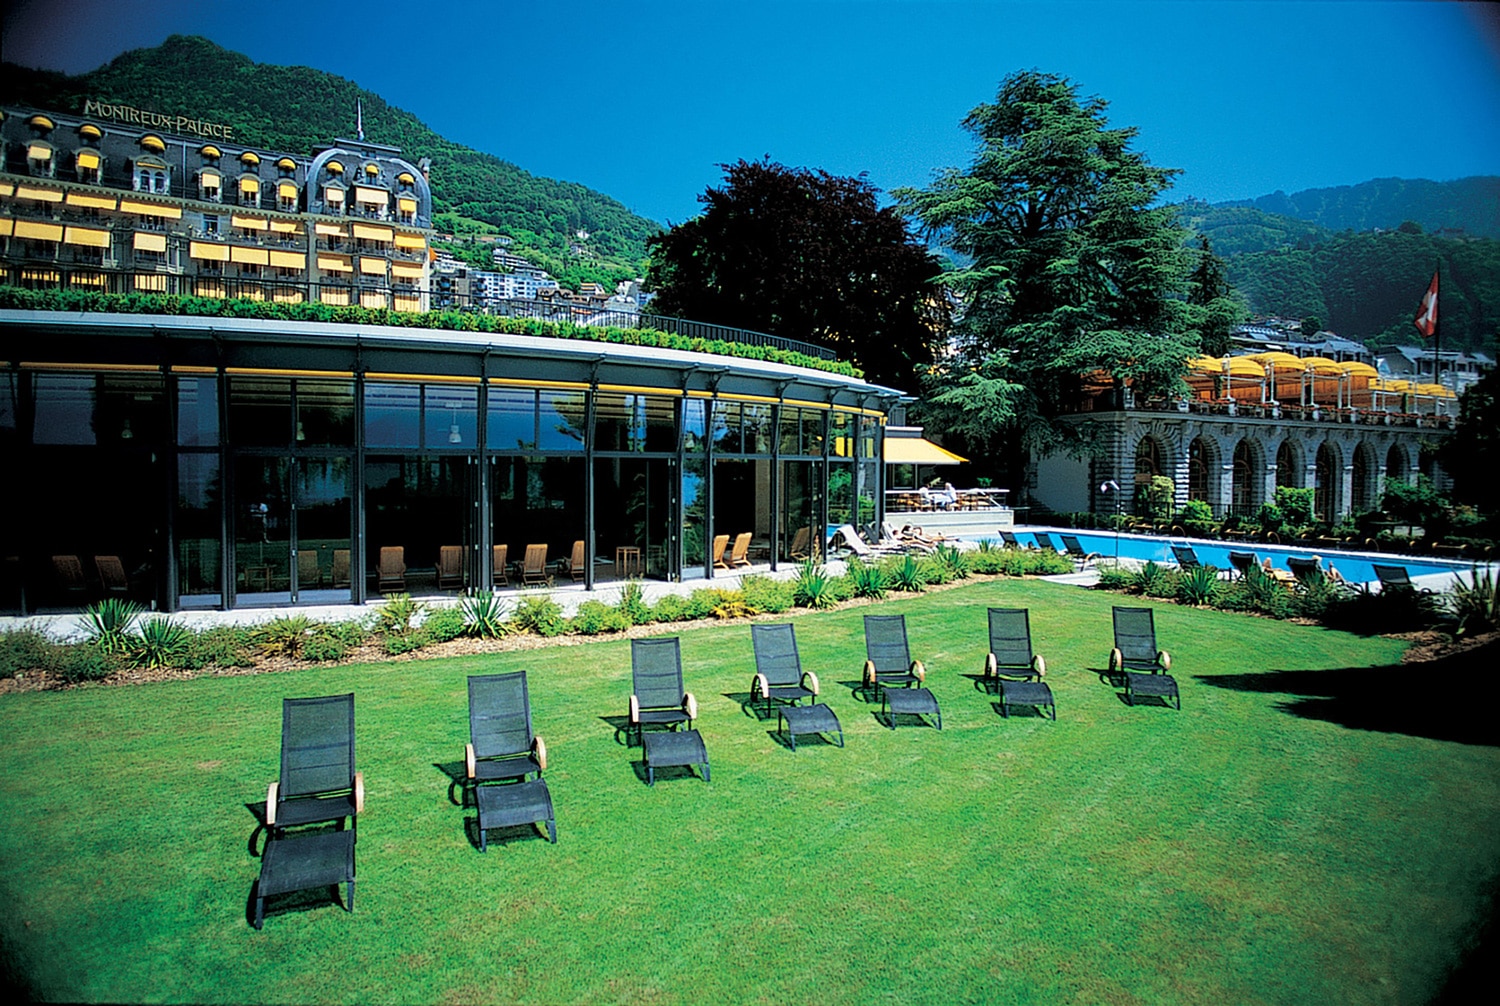 Passez du temps au Fairmont Montreux Palace